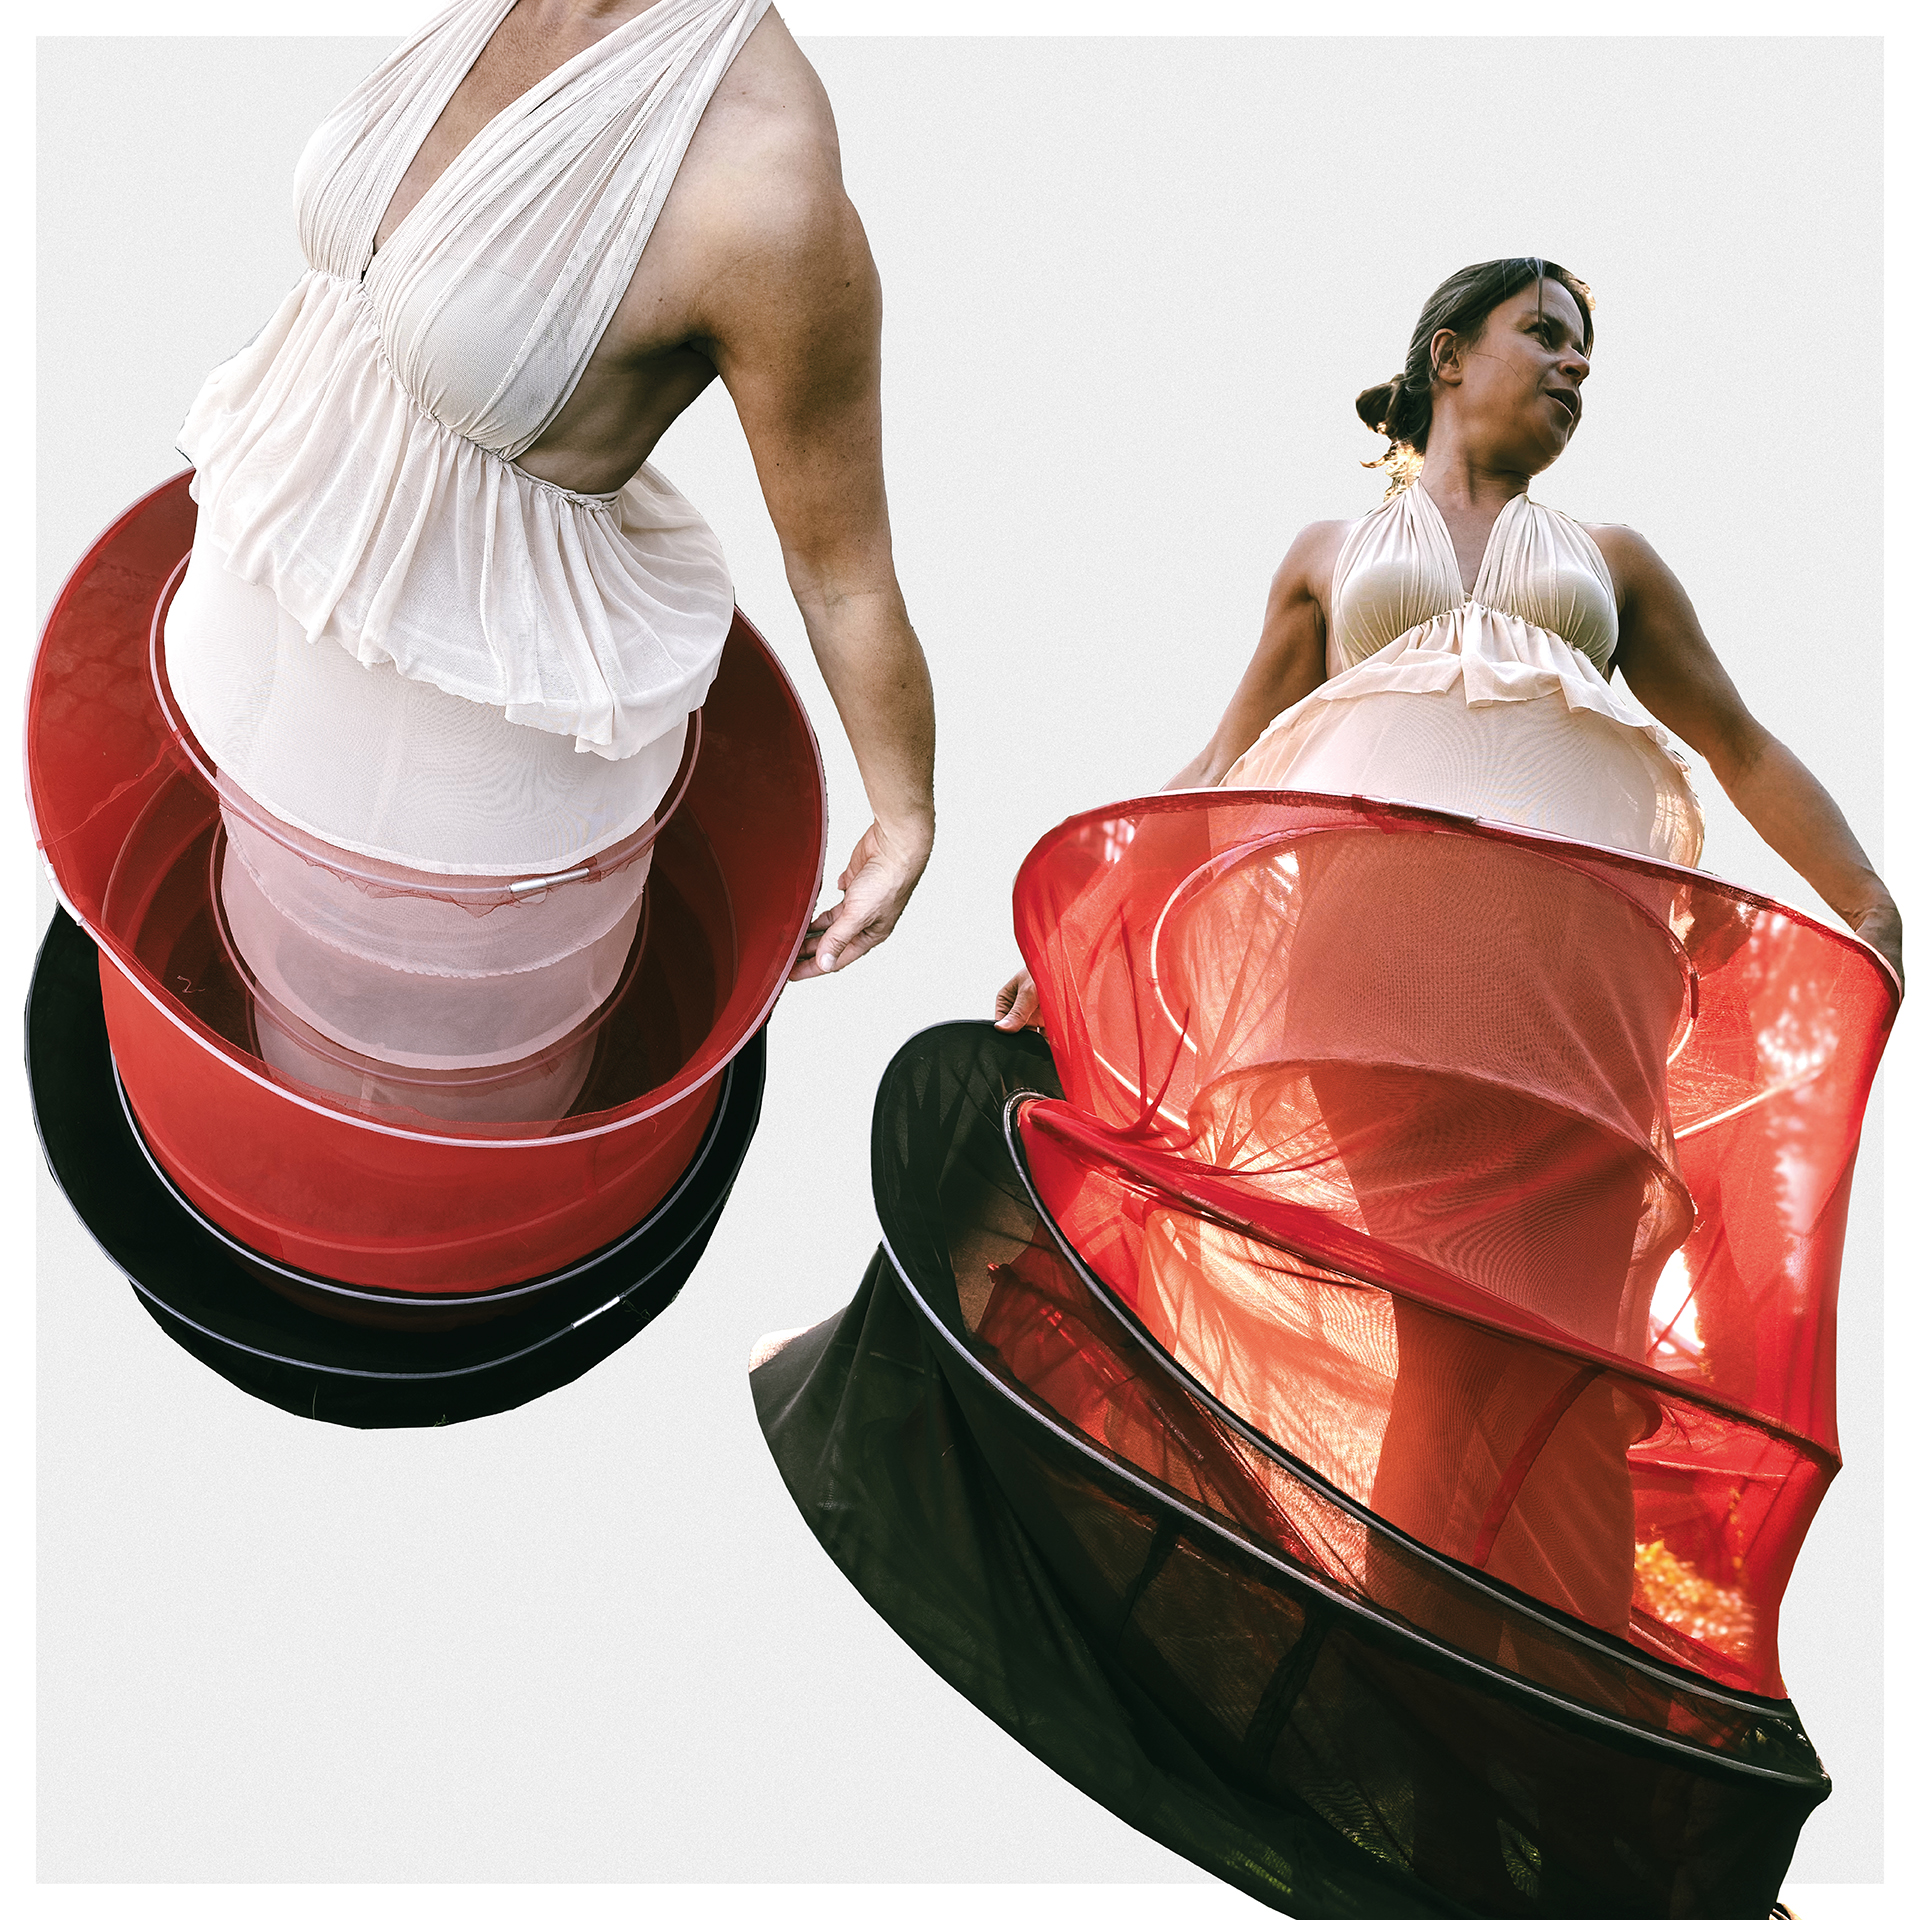 Kompozycja z dwóch zdjęć przedstawiających kobietę ubraną w suknię o przekroju koła. Kolory biały, czerwony, brąz